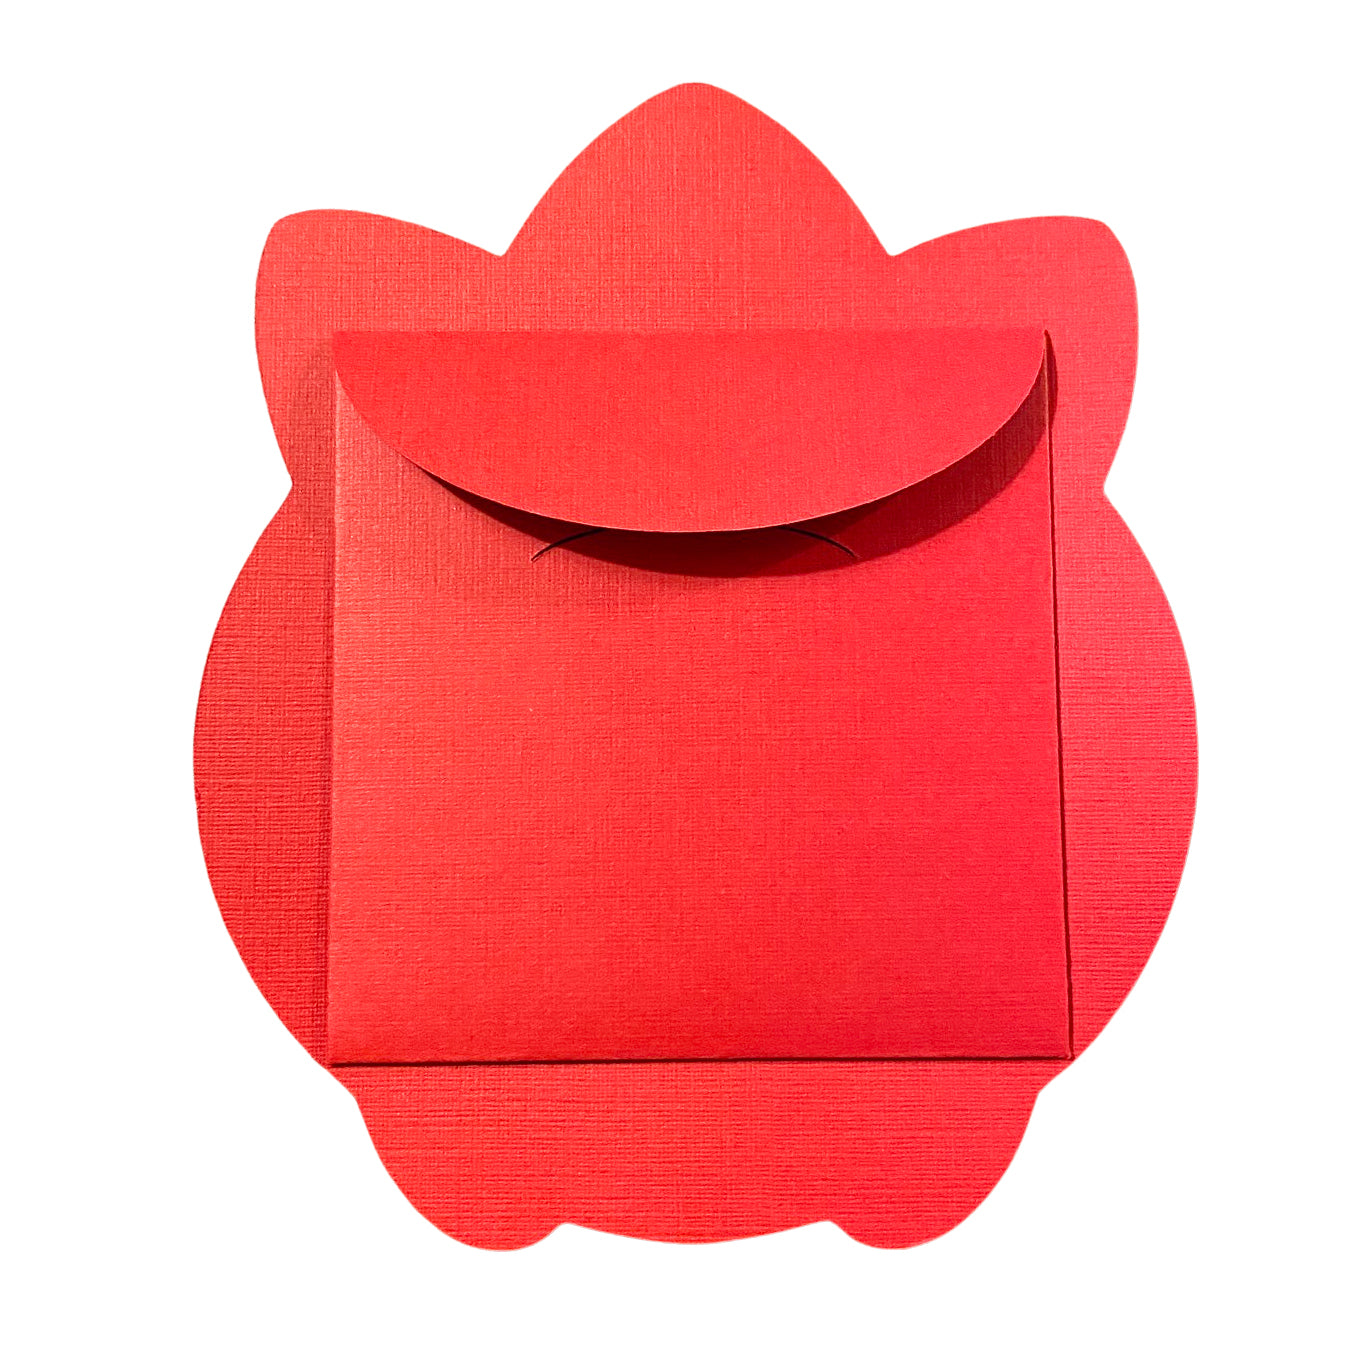 Chunkemon Togepi Red Envelope